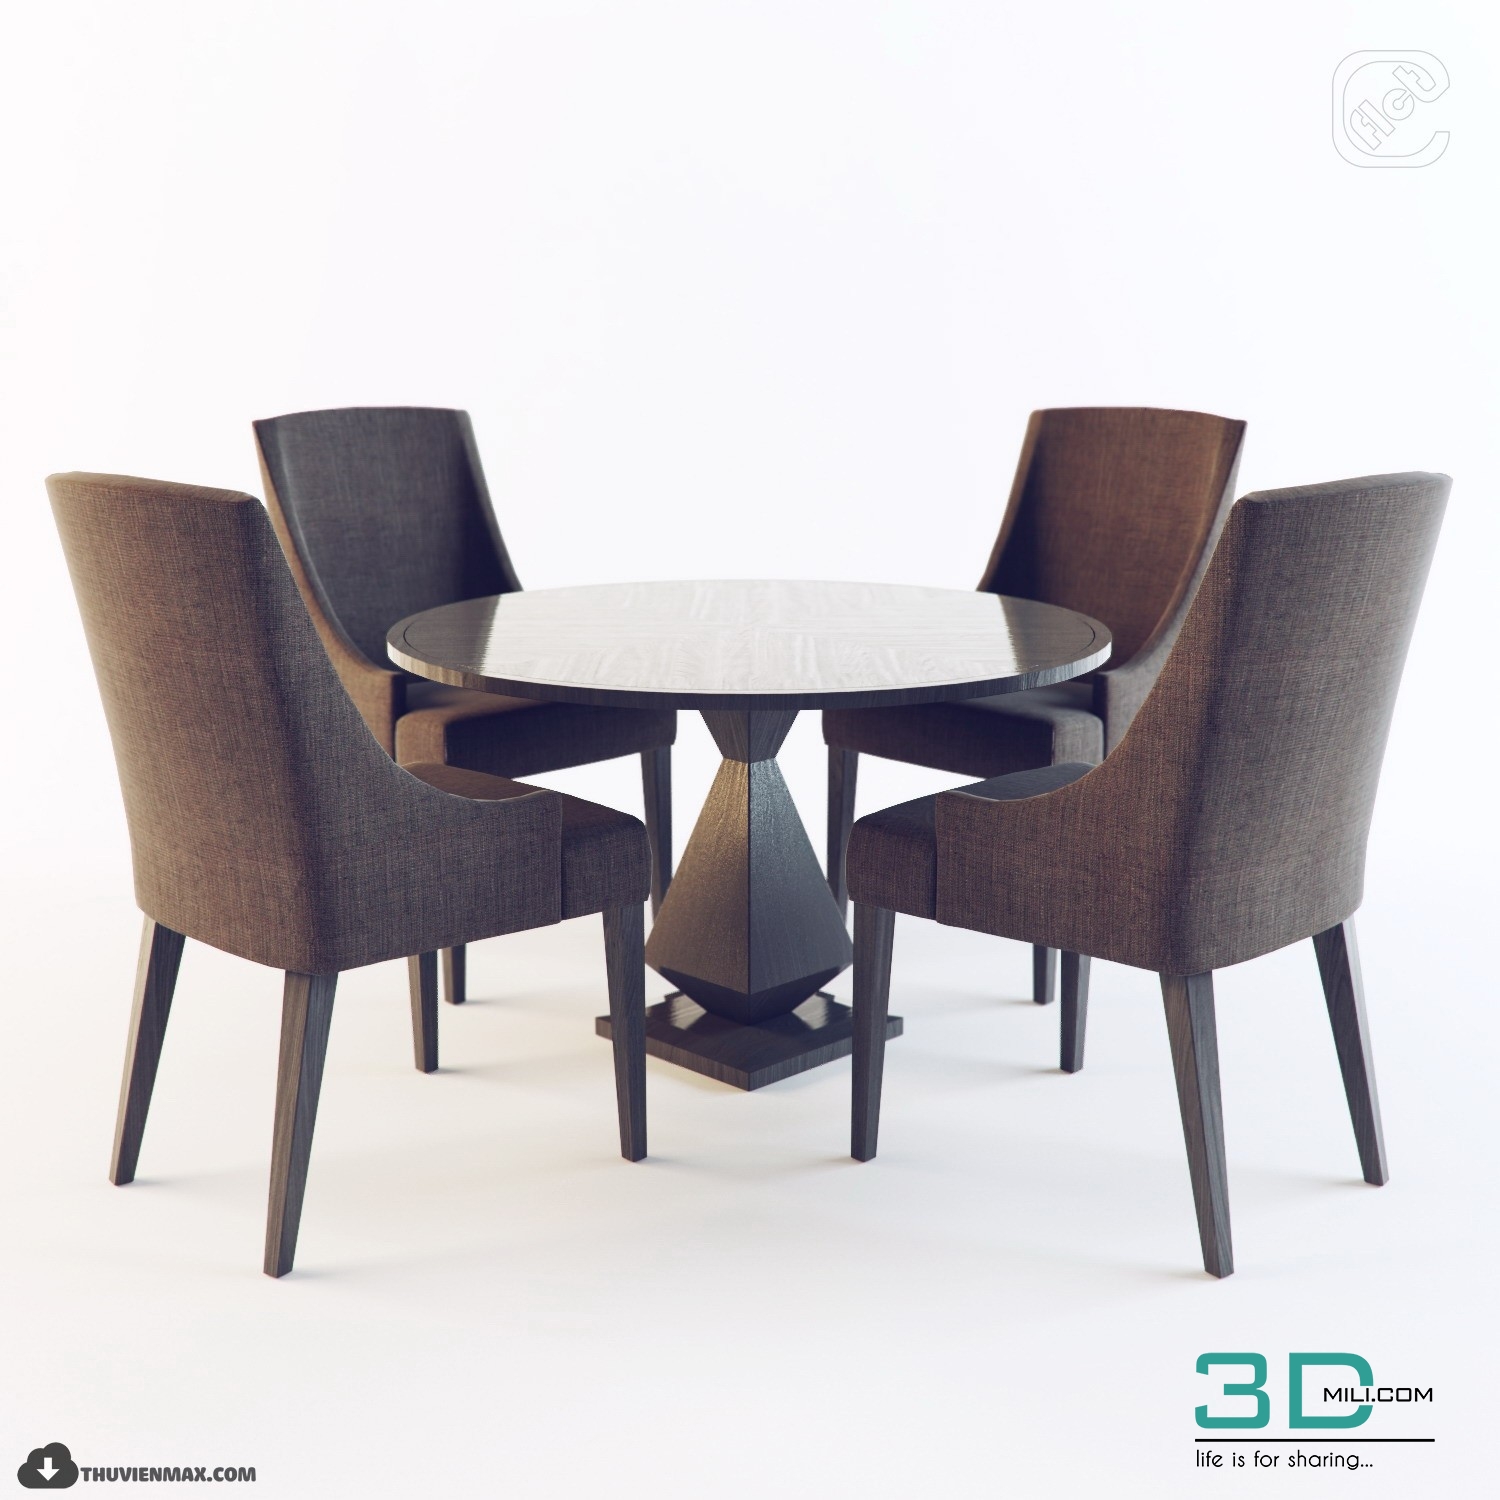 furniture 3d model free download